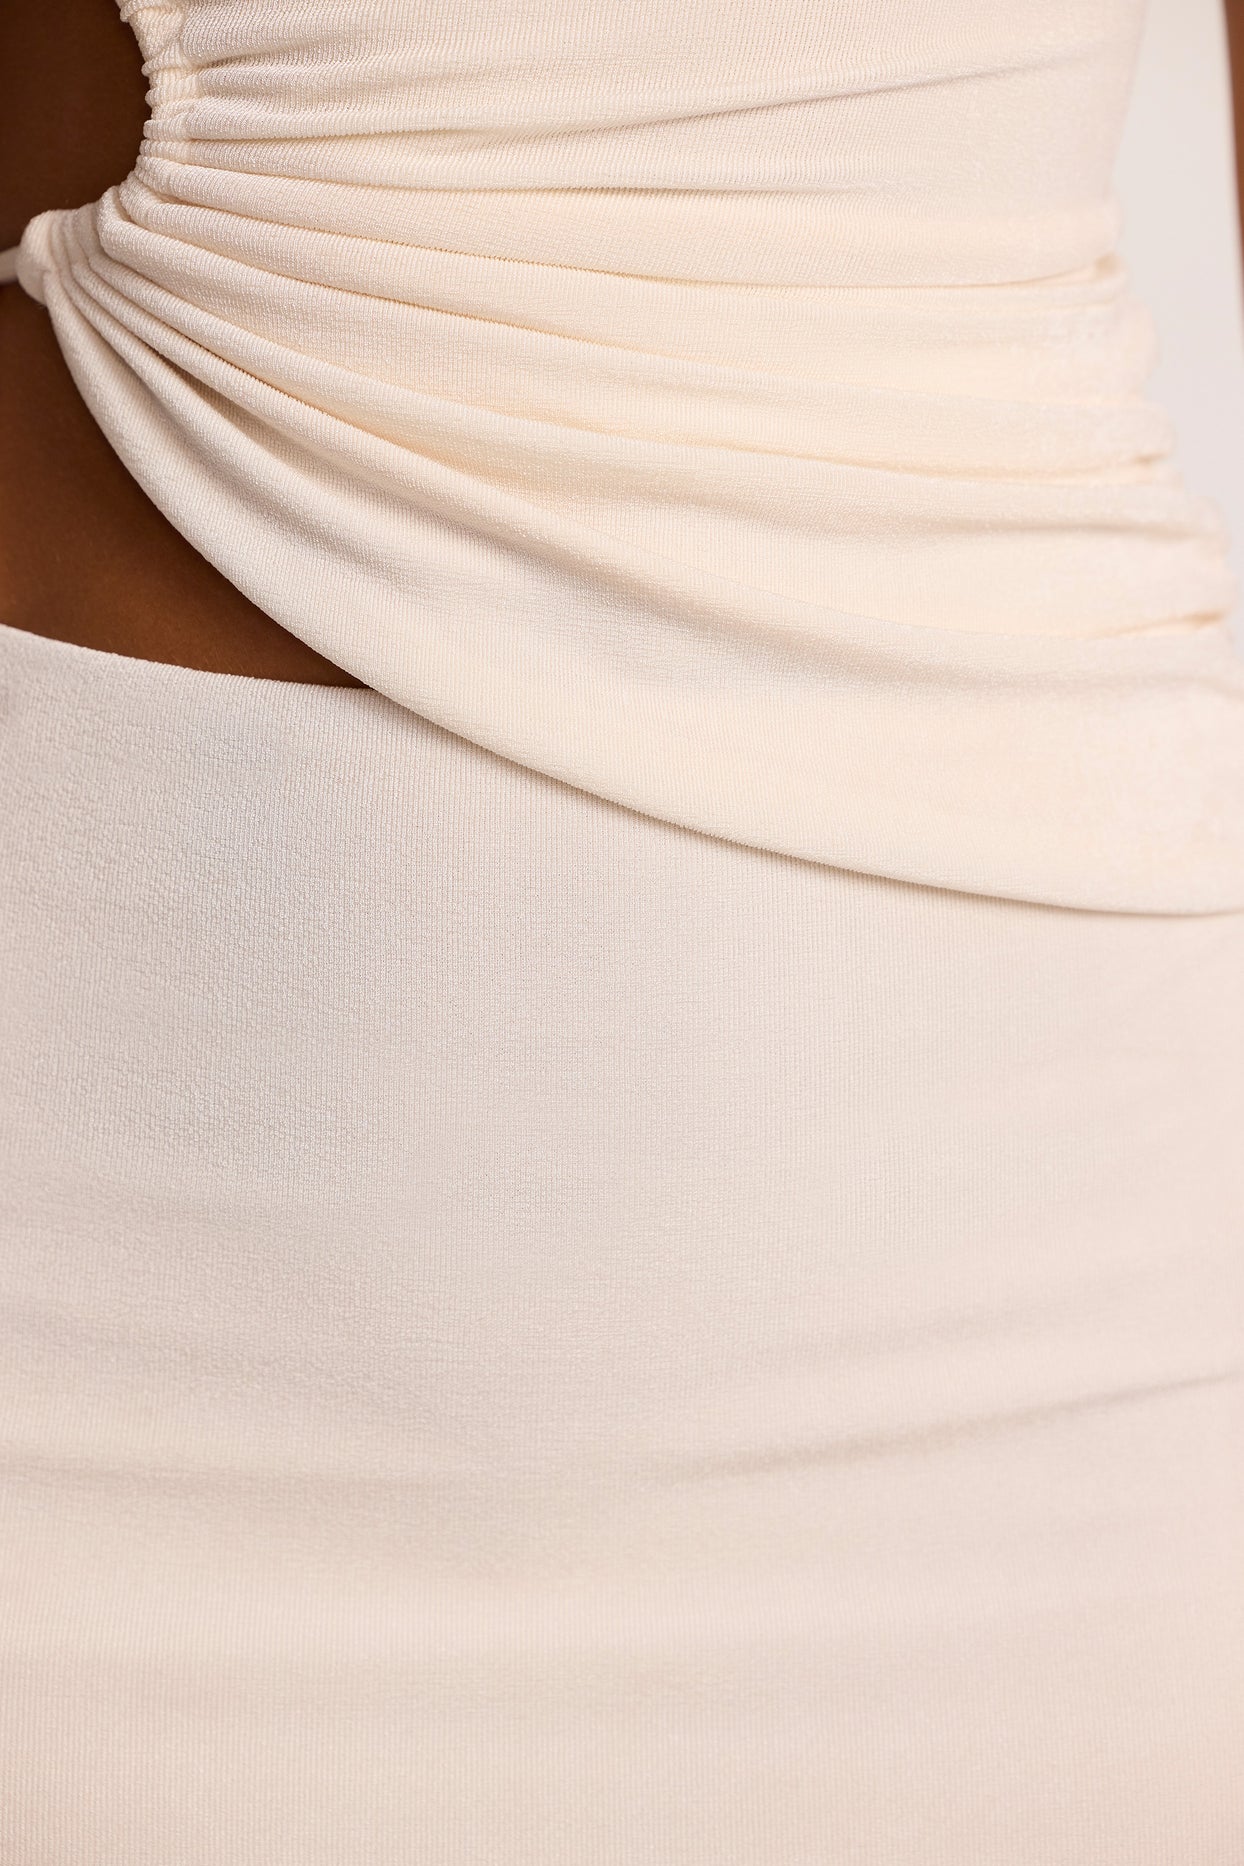 Haut asymétrique épaule dénudée froncé en jersey texturé en ivoire